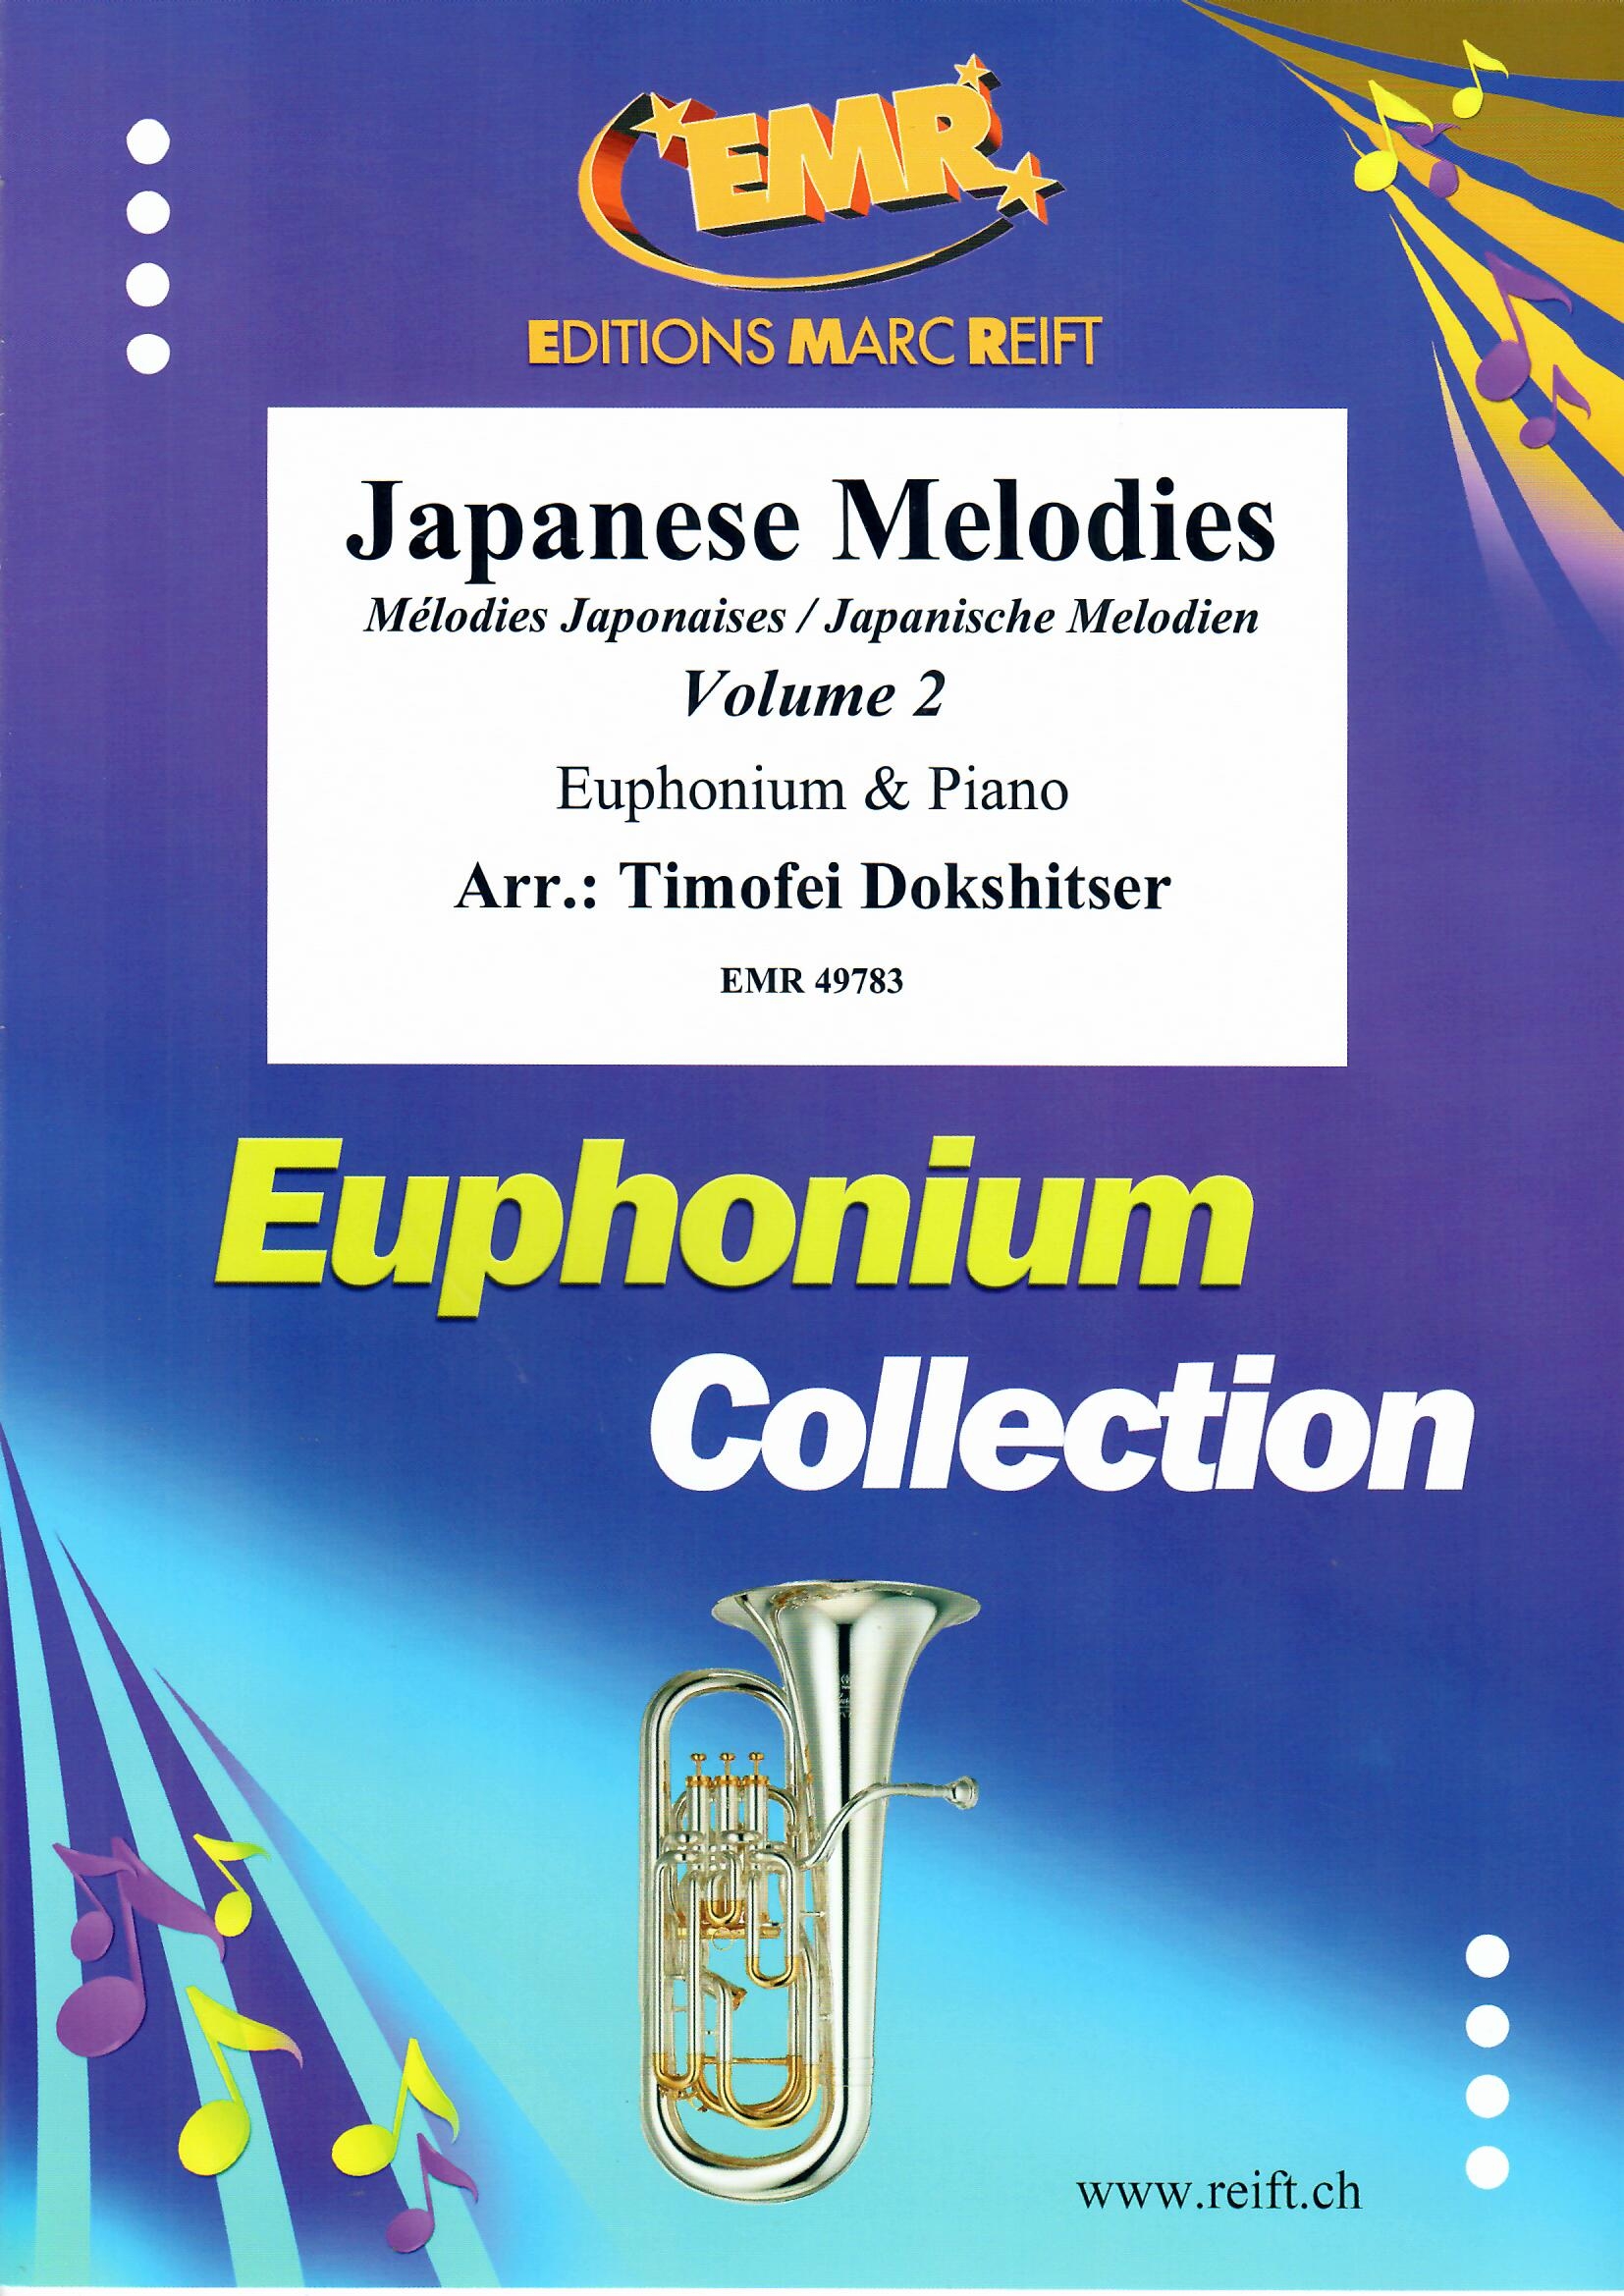 JAPANESE MELODIES VOL. 2 - Euphonium & Piano, SOLOS - Euphonium